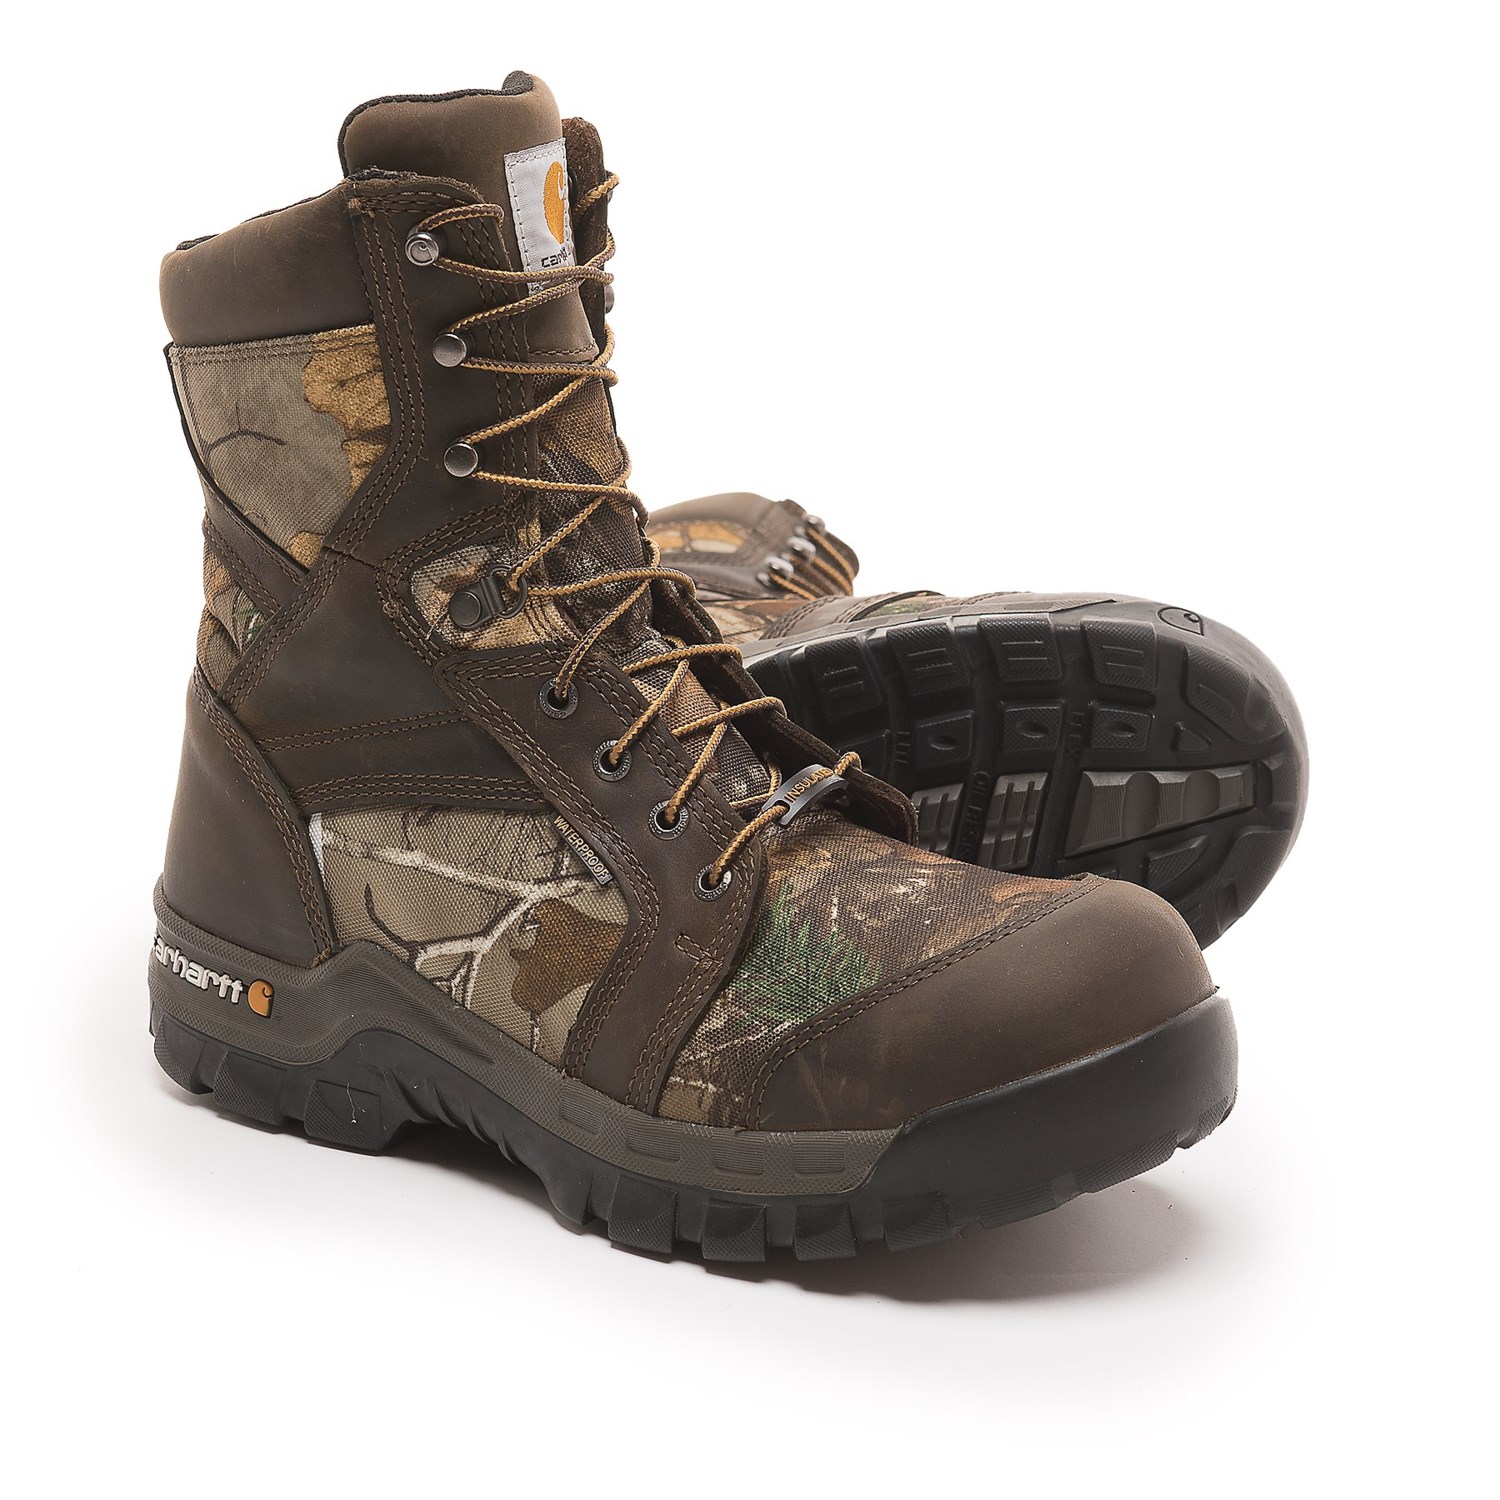 Carhartt 8” Rugged Flex Work Boots – Waterproof, Insulated, Composite ...